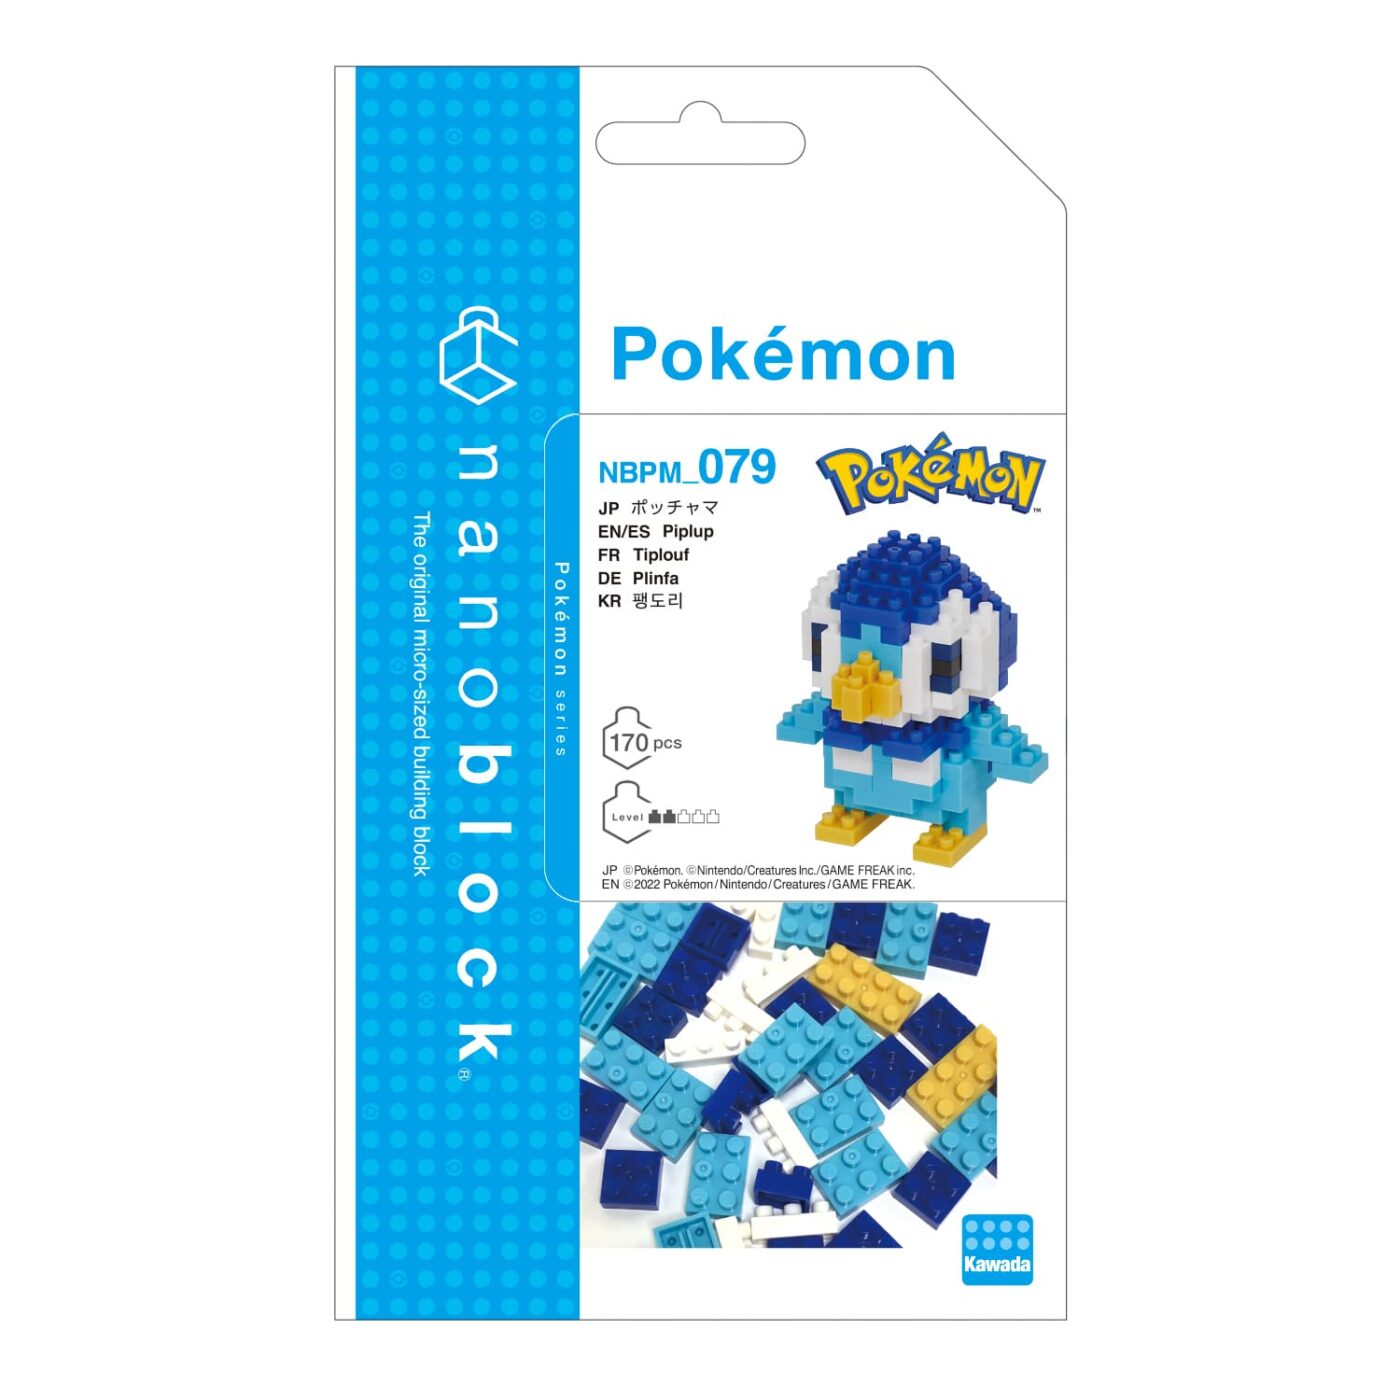 Product image of Pokémon POCHAMA4